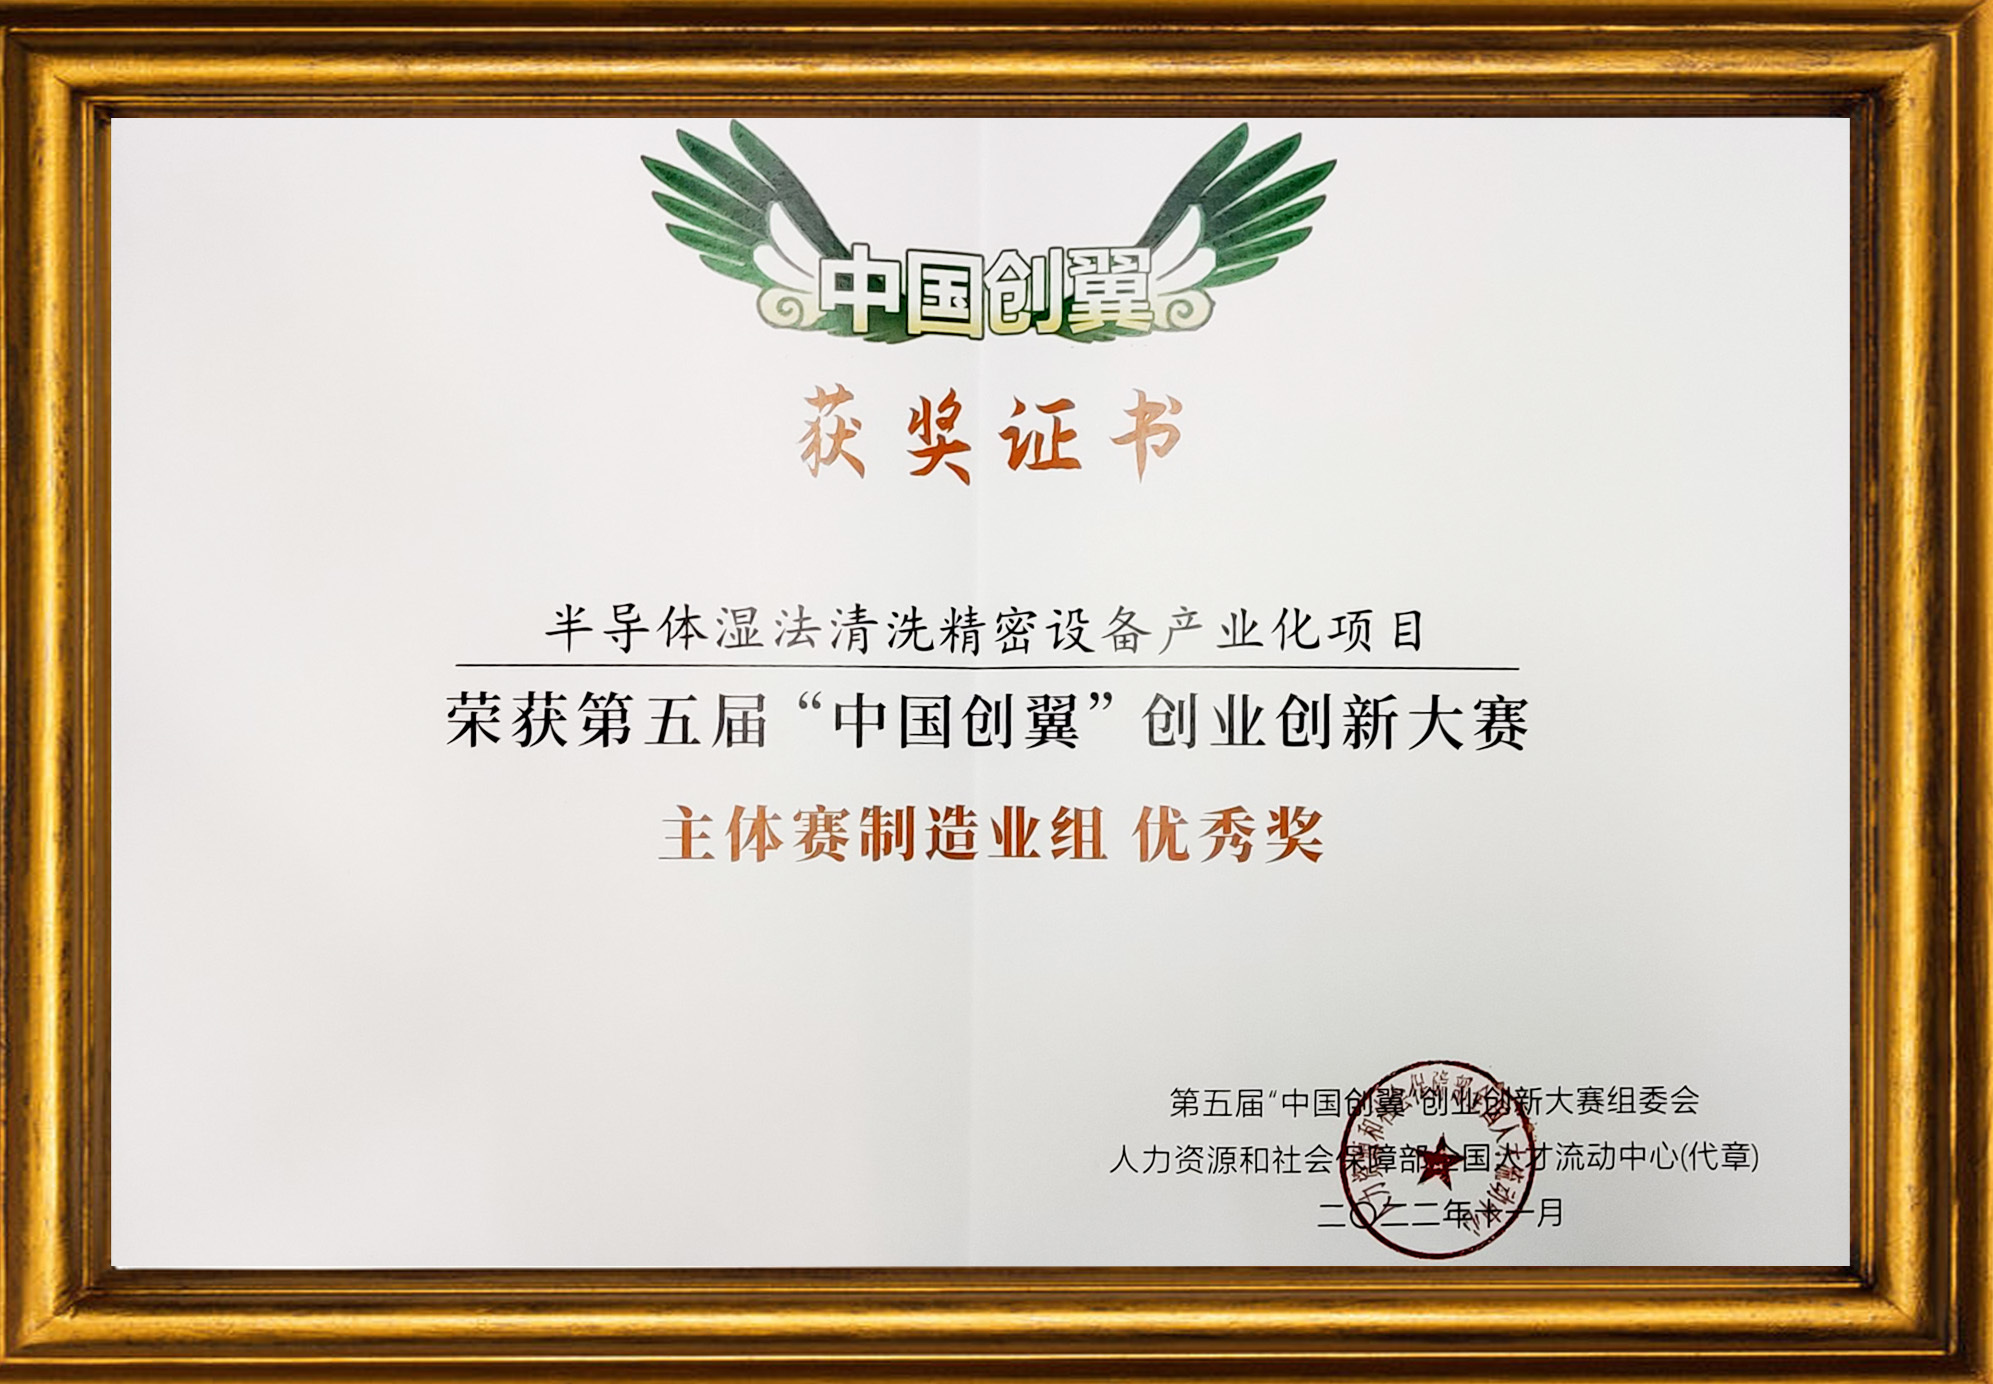 第五届“中国创翼”创业创新大赛主体赛制造业组-优秀奖荣誉证书